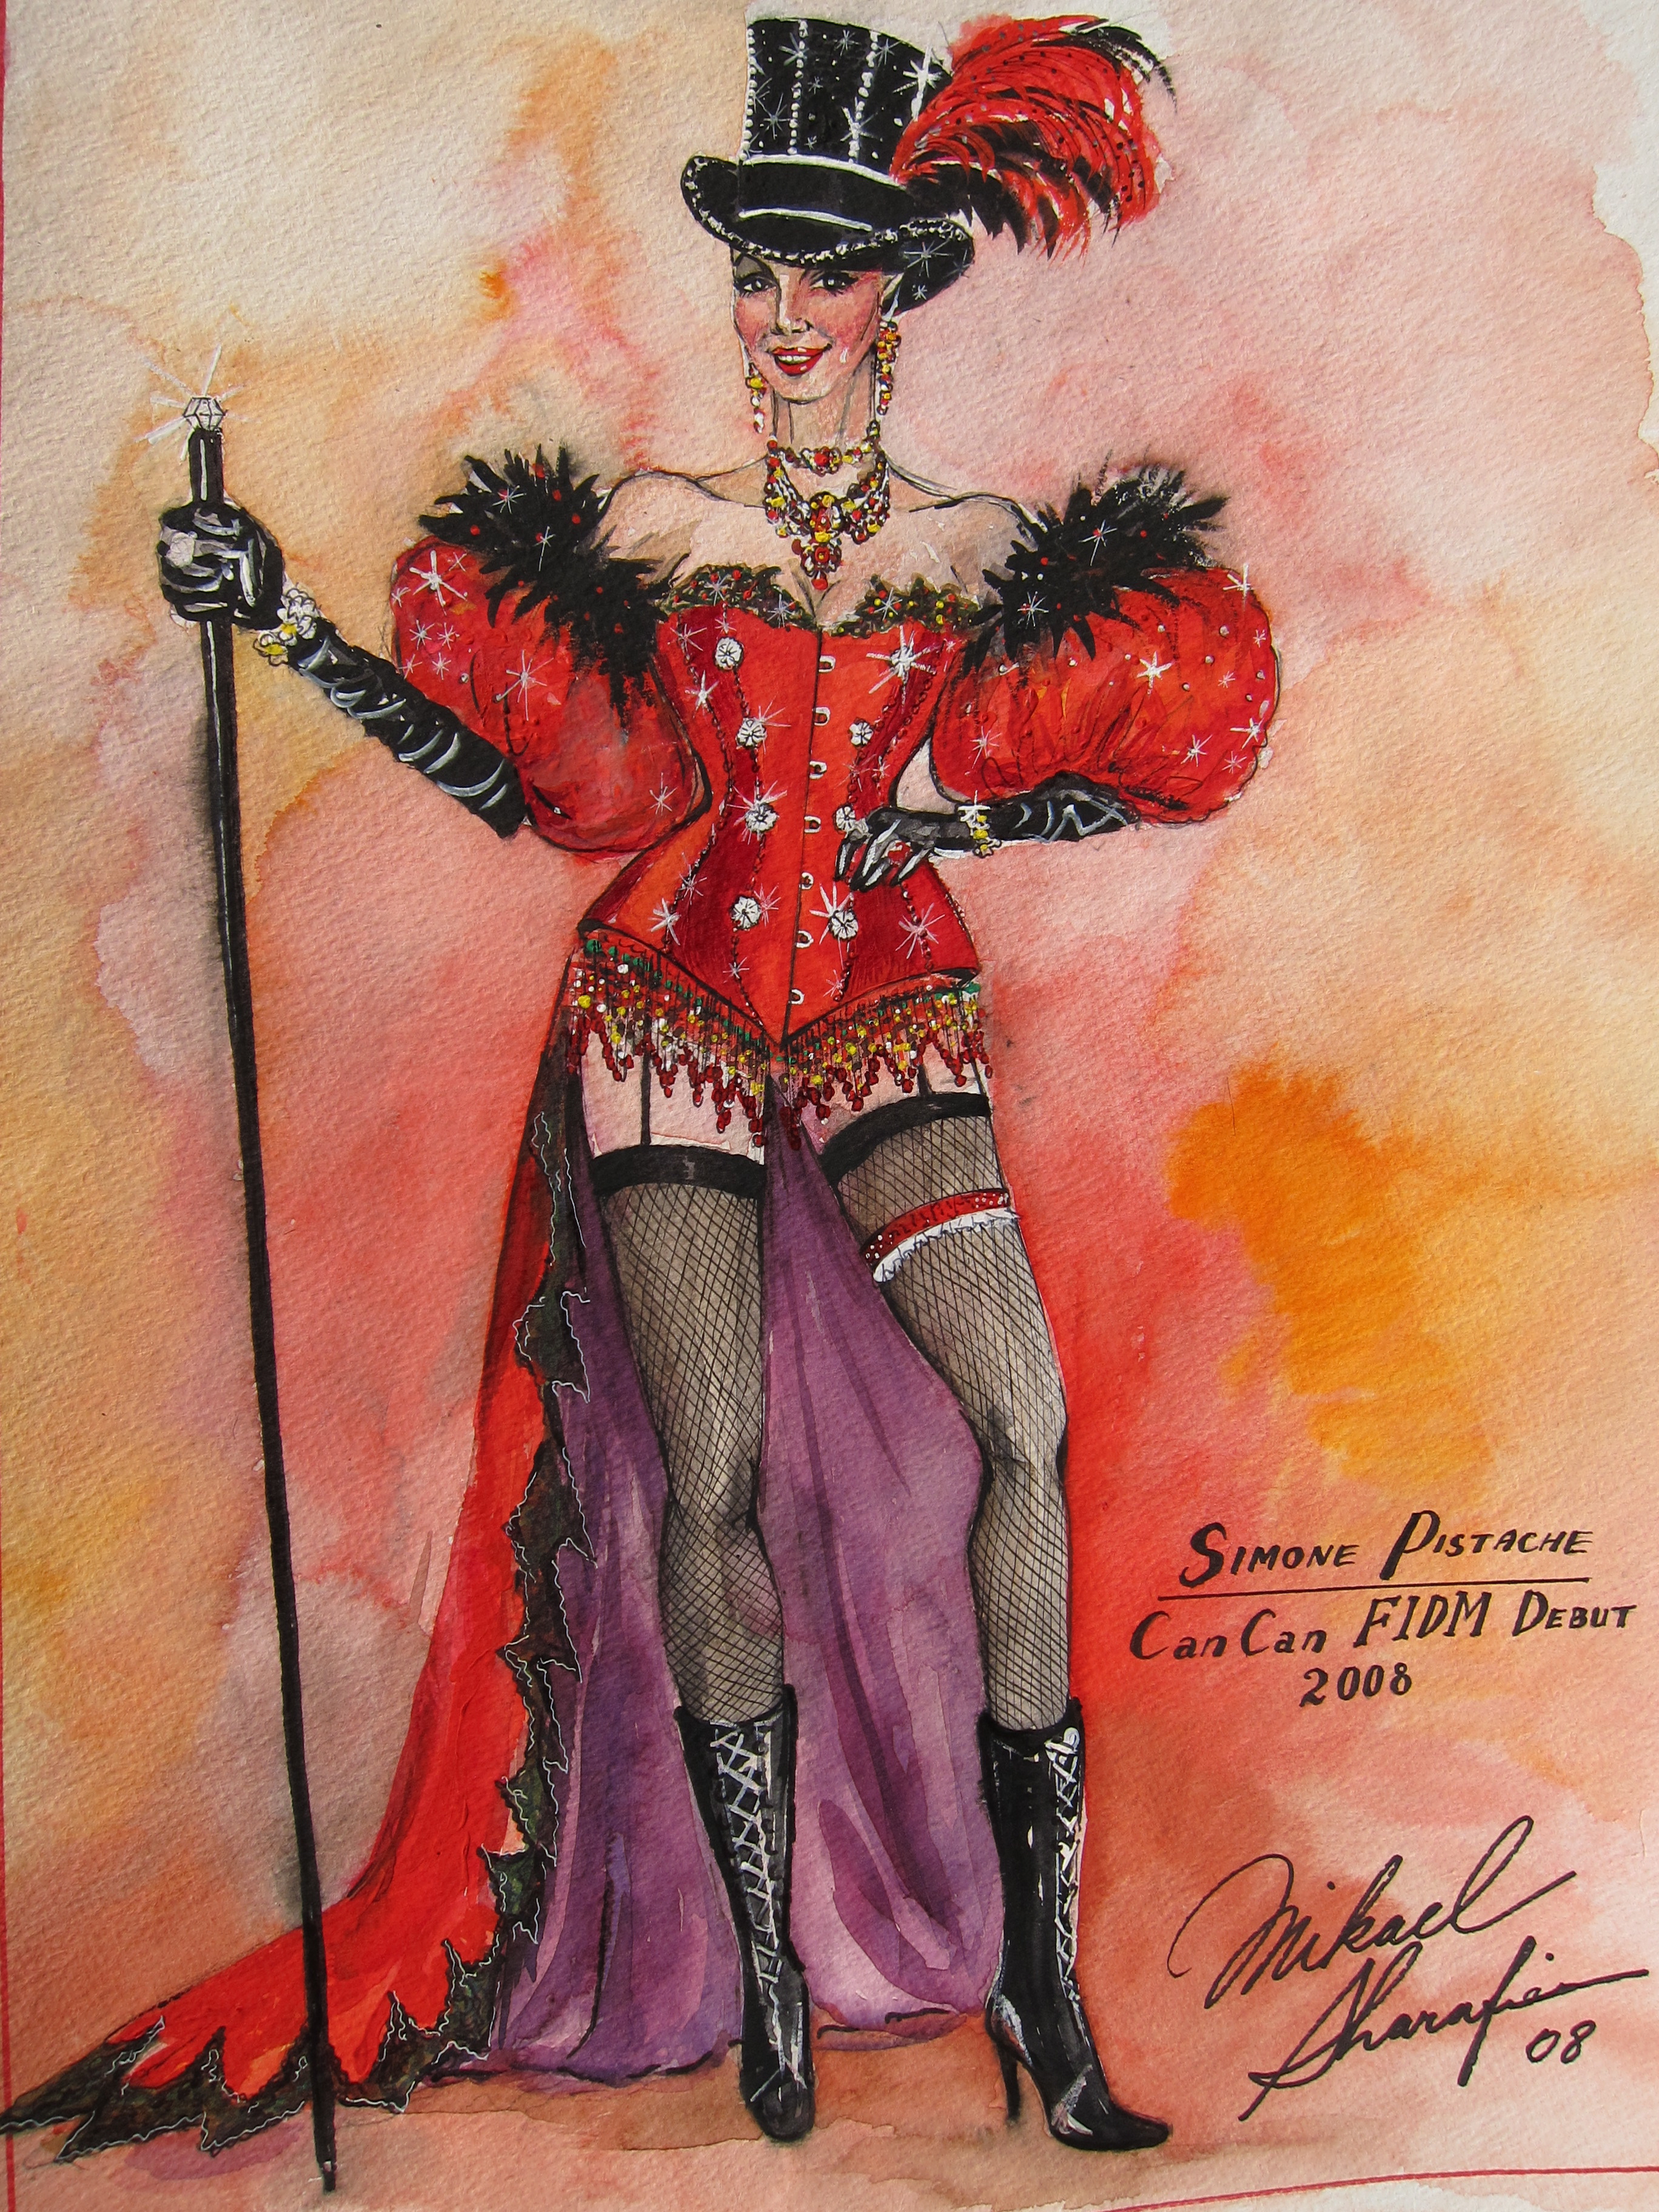 FIDM Debut 2008 Moulin Rouge Madame Pistache